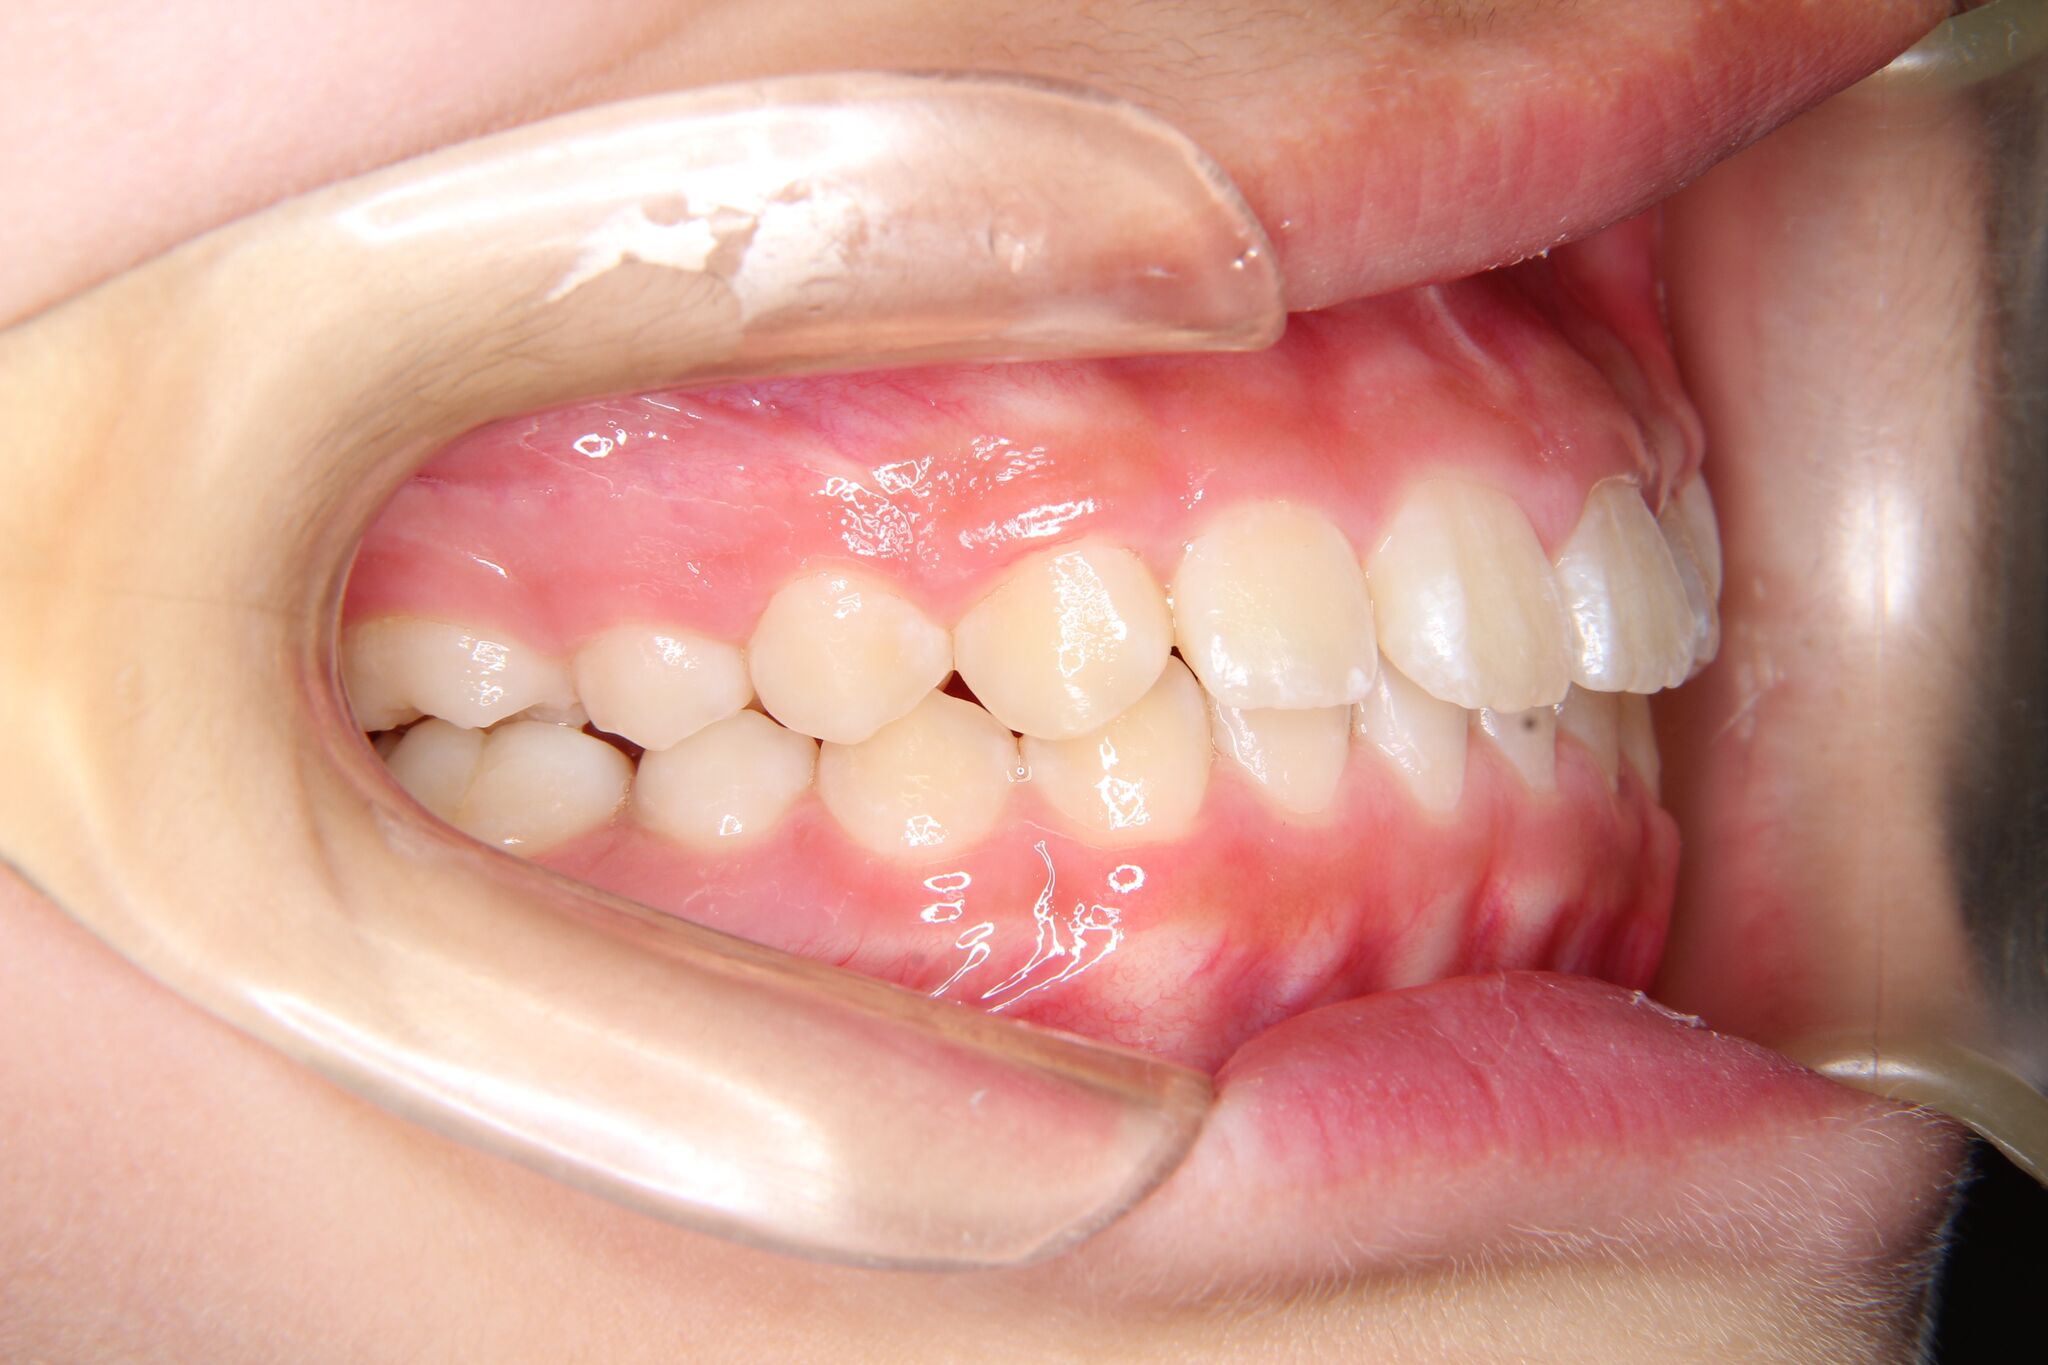 小学生女子 上顎前歯部のガタガタ歯 叢生 深い噛み合わせ 過蓋咬合 よしかわ矯正歯科 症例